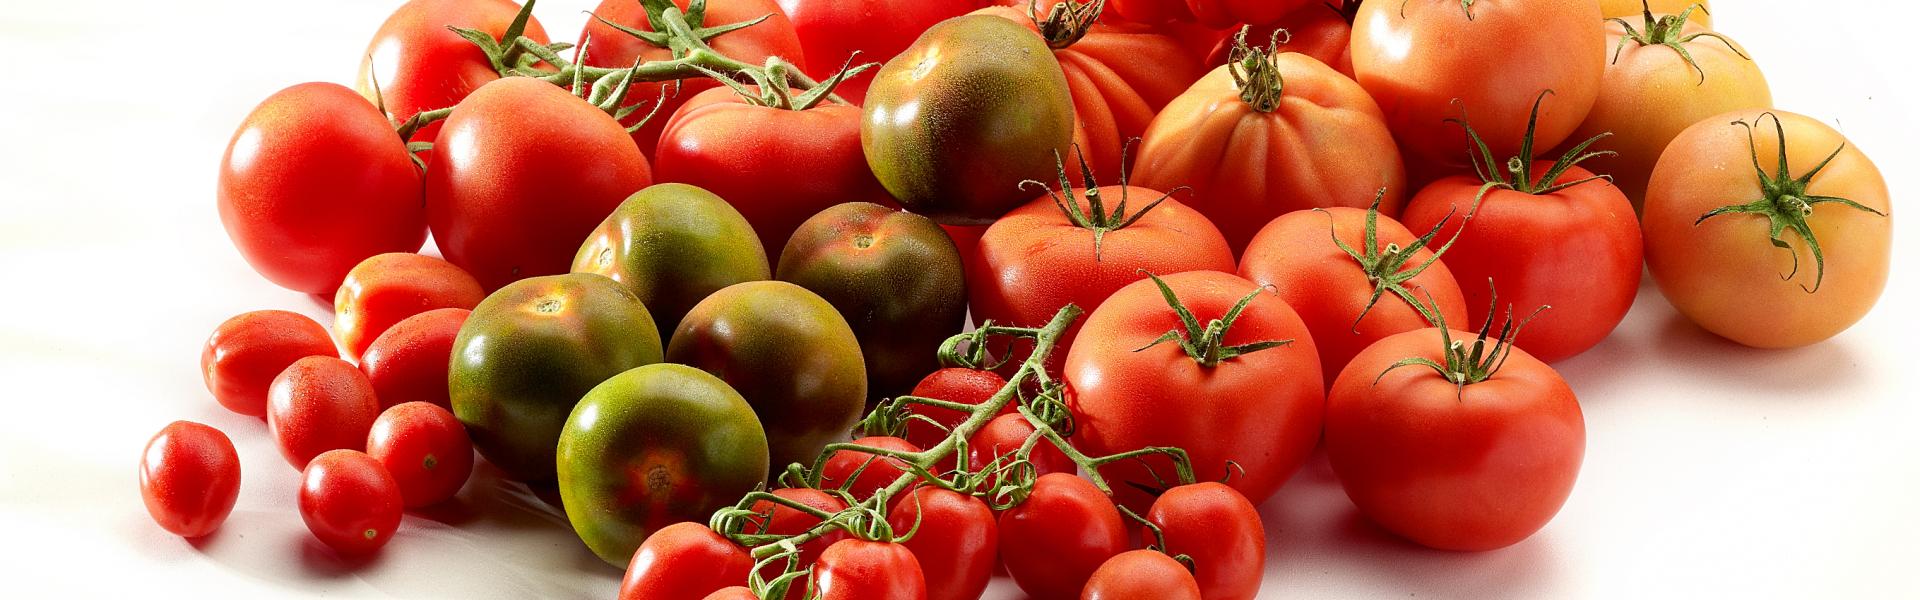 Tomaatsoorten